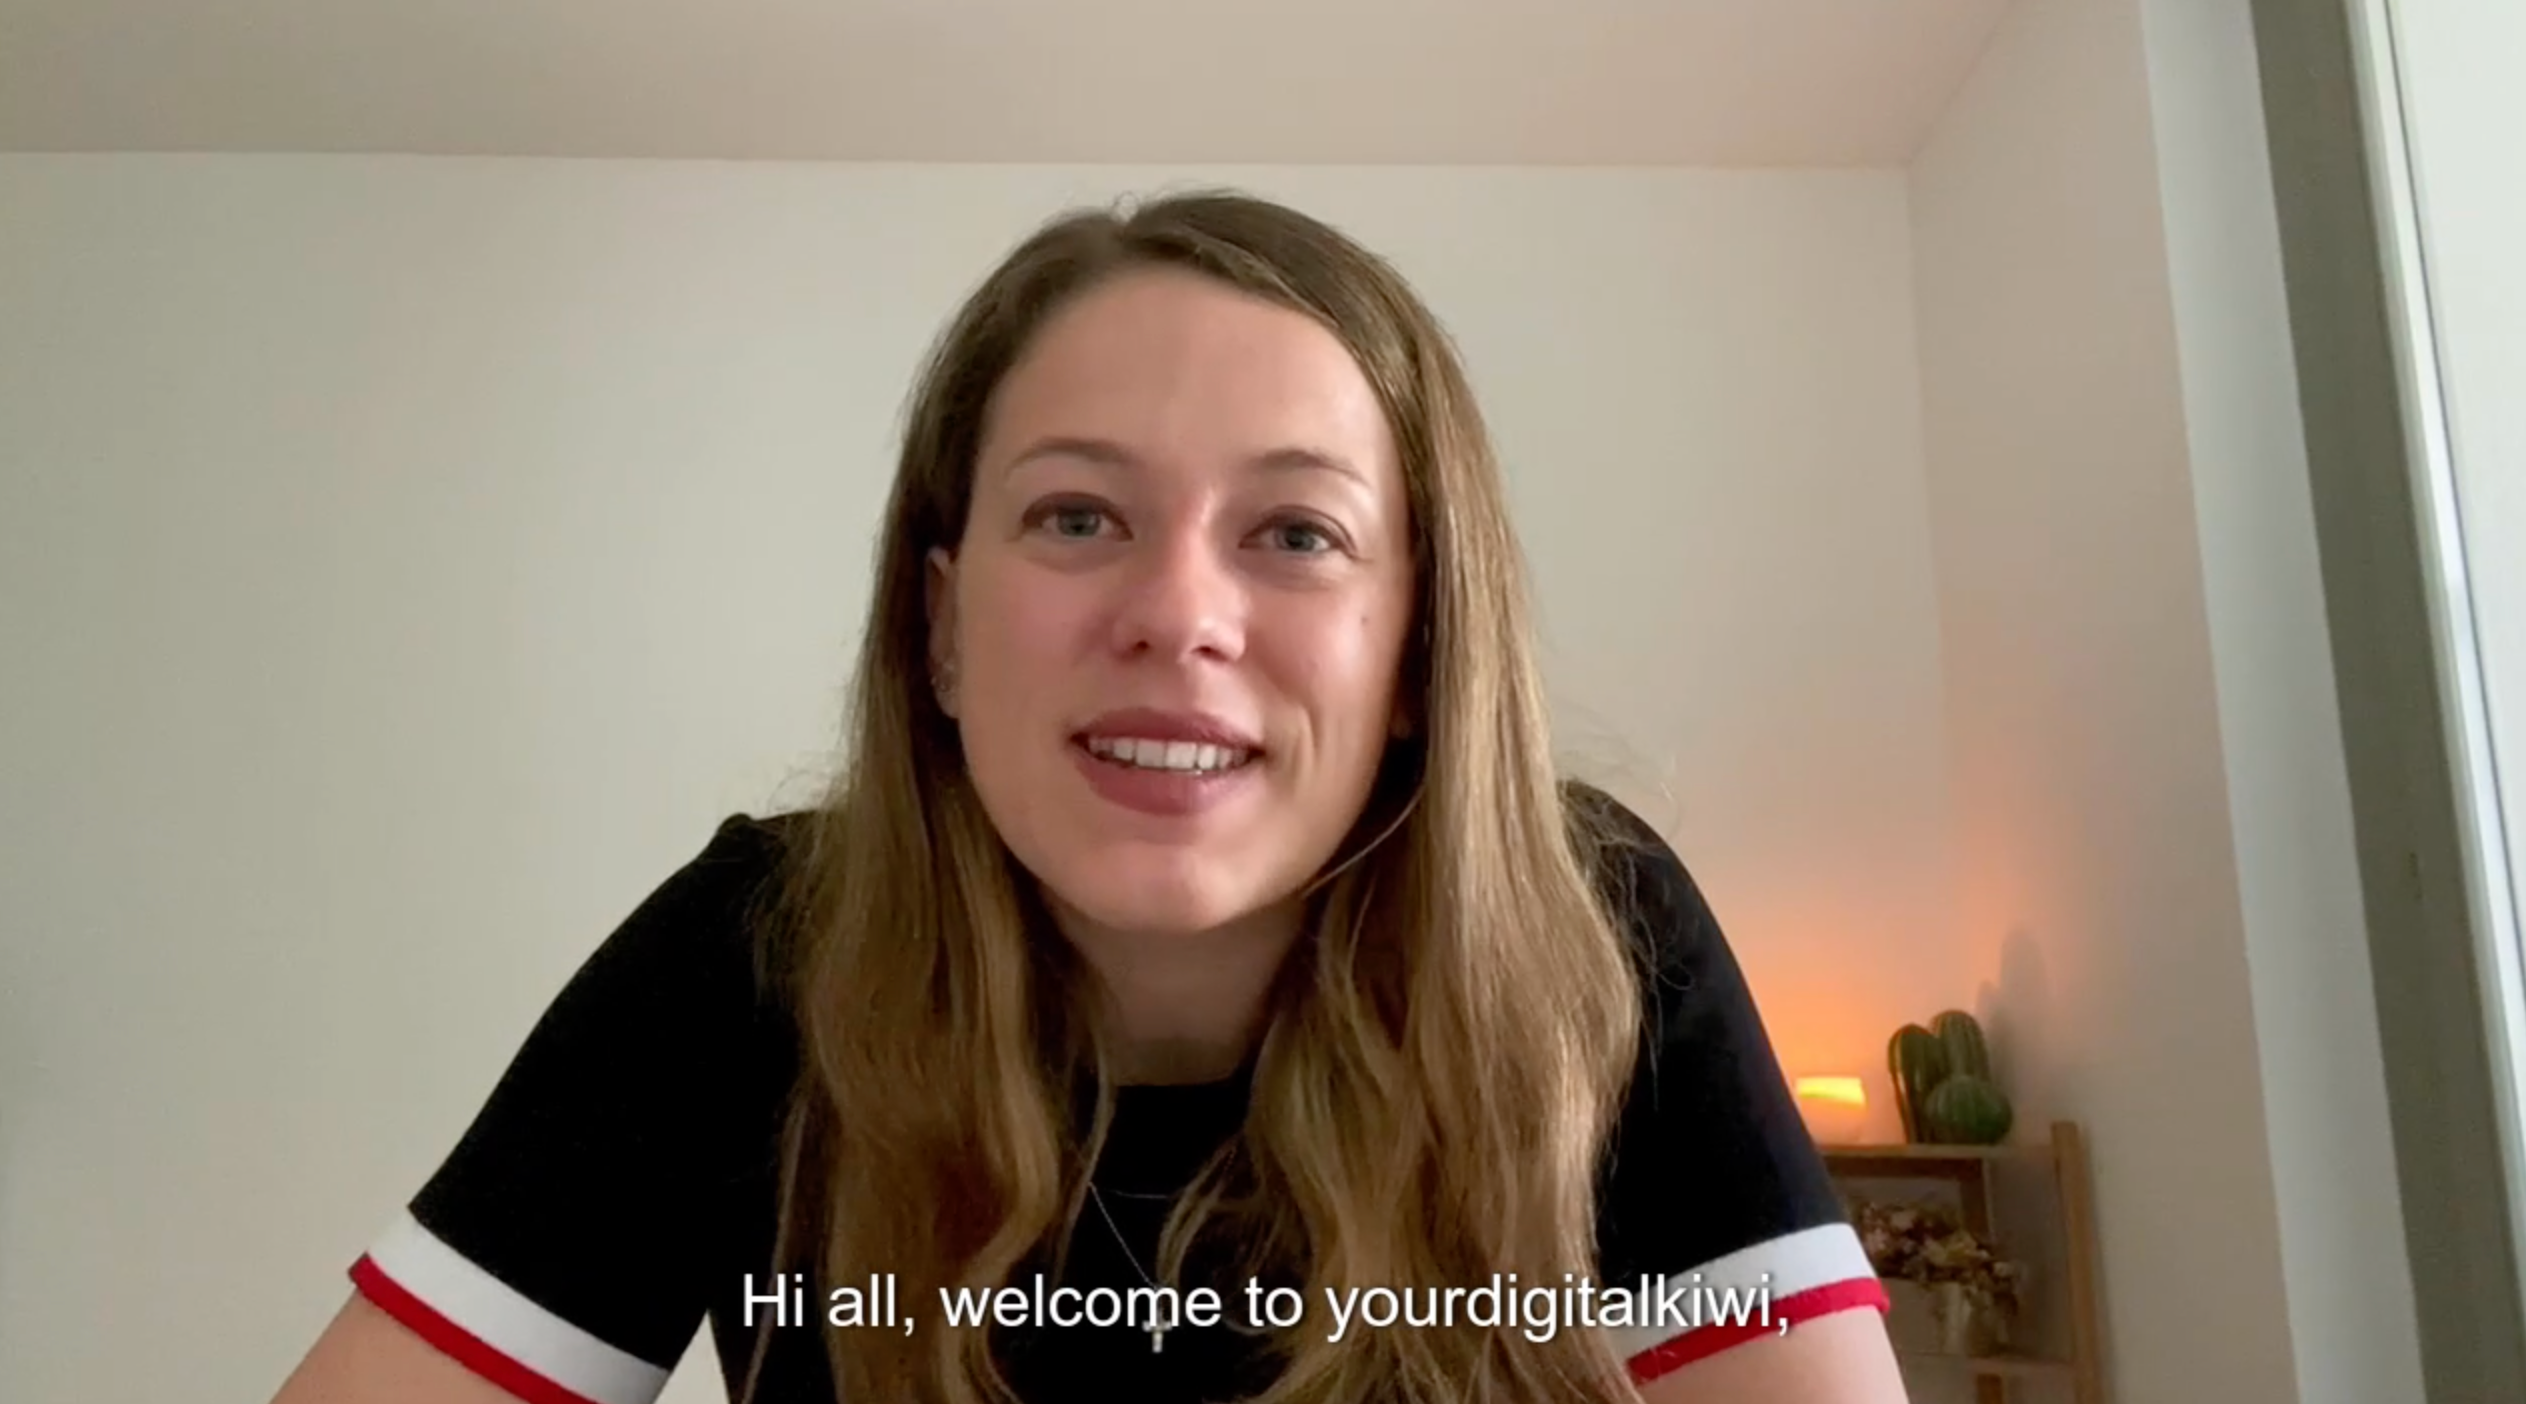 Load video: welcome to yourdigitalkiwi